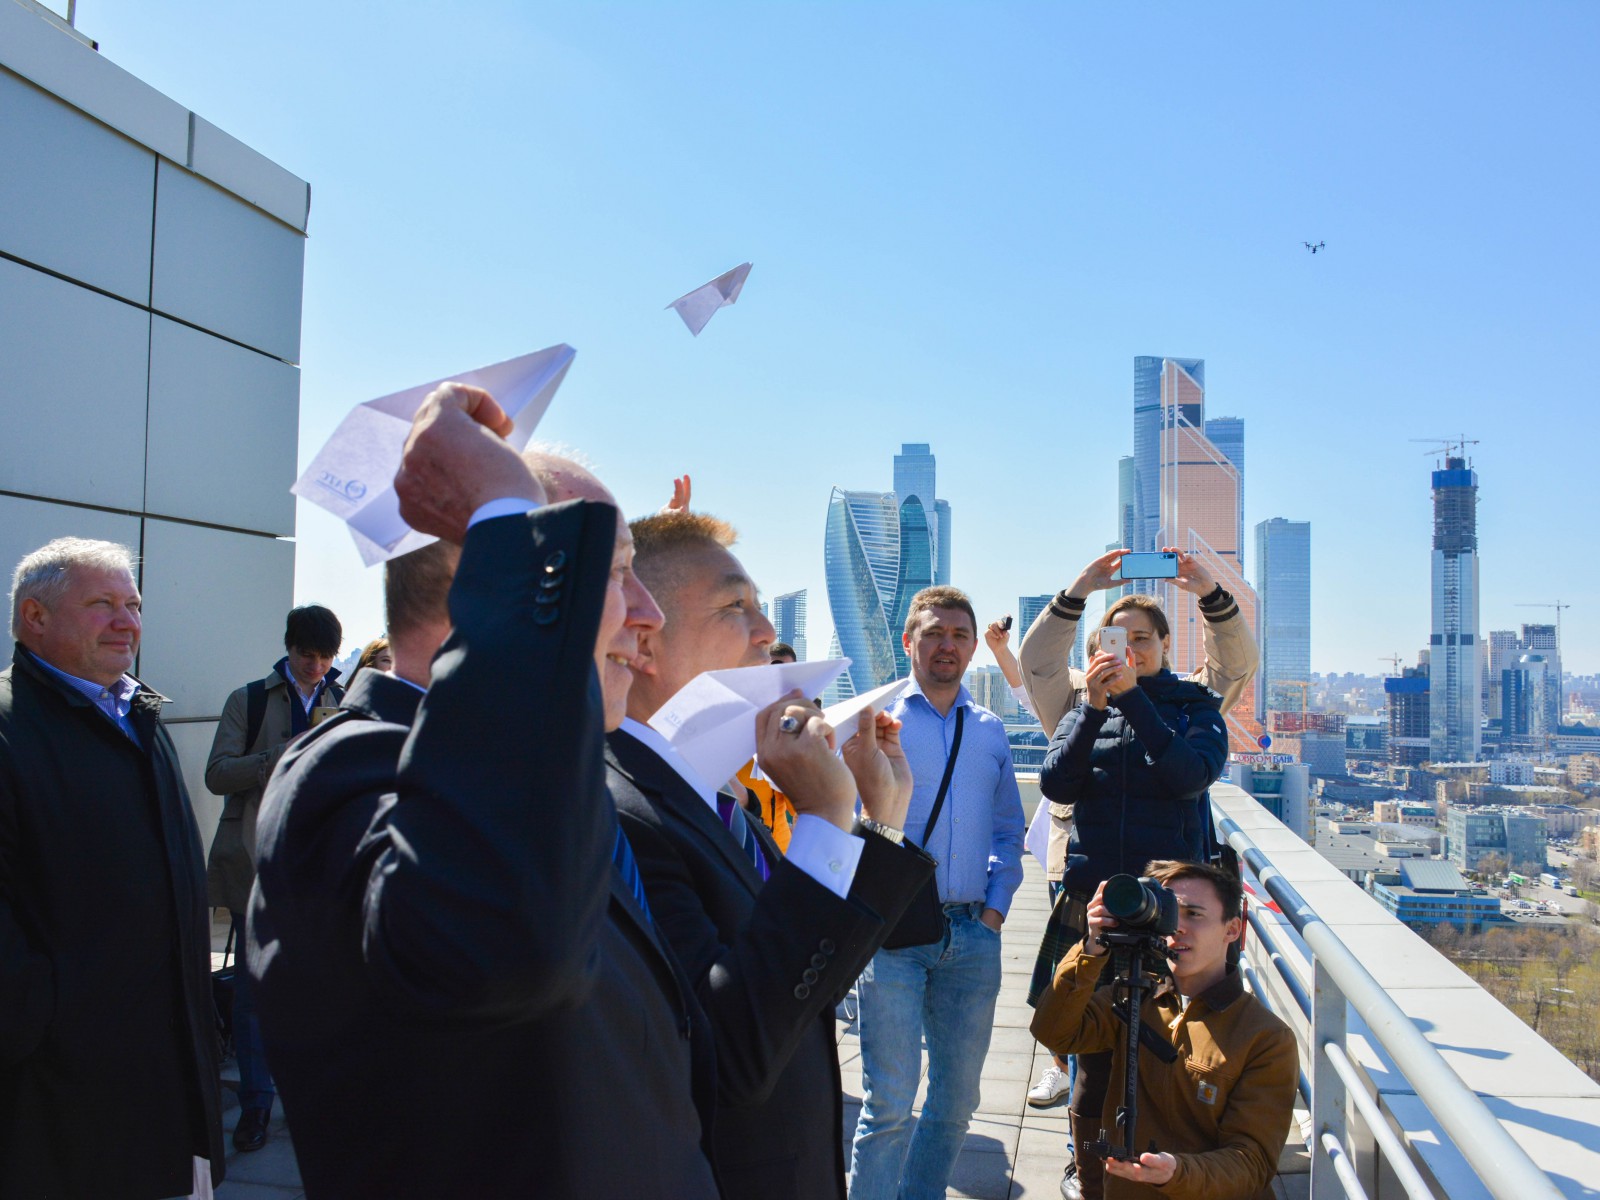 В конце мероприятия журналисты запустили с крыши отеля Crowne Plaza Moscow бумажные самолетики